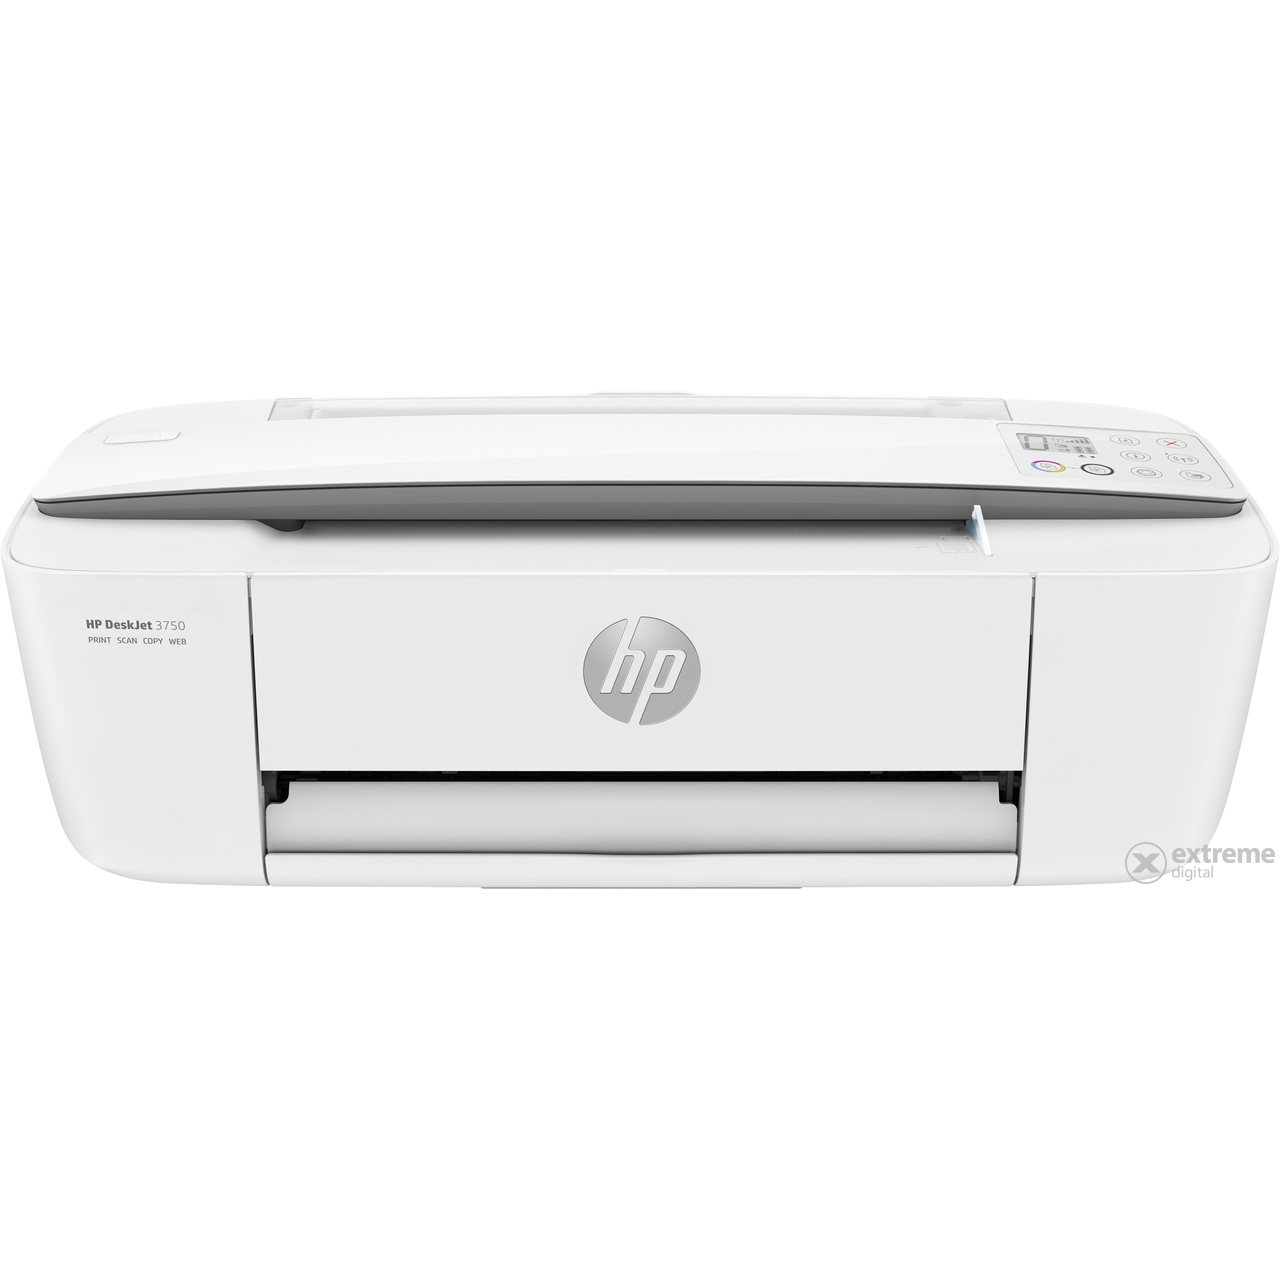 HP DeskJet 3750 multifunkcijski tintni pisač